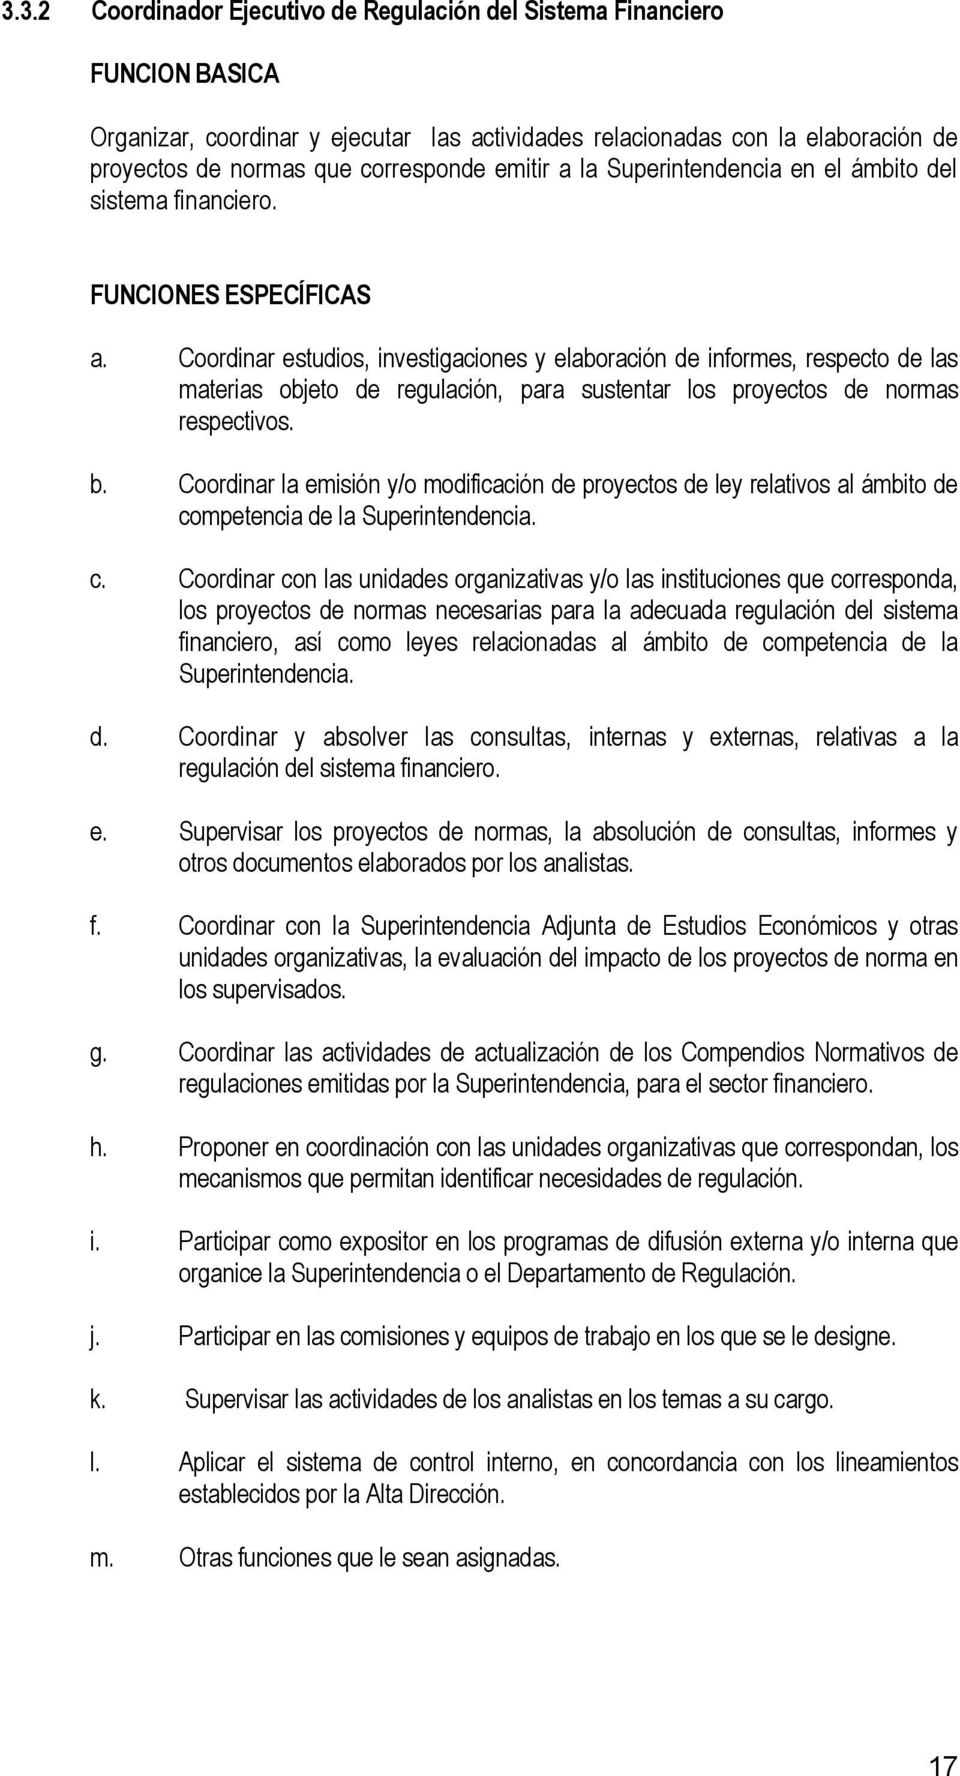 b. Coordinar la emisión y/o modificación de proyectos de ley relativos al ámbito de co